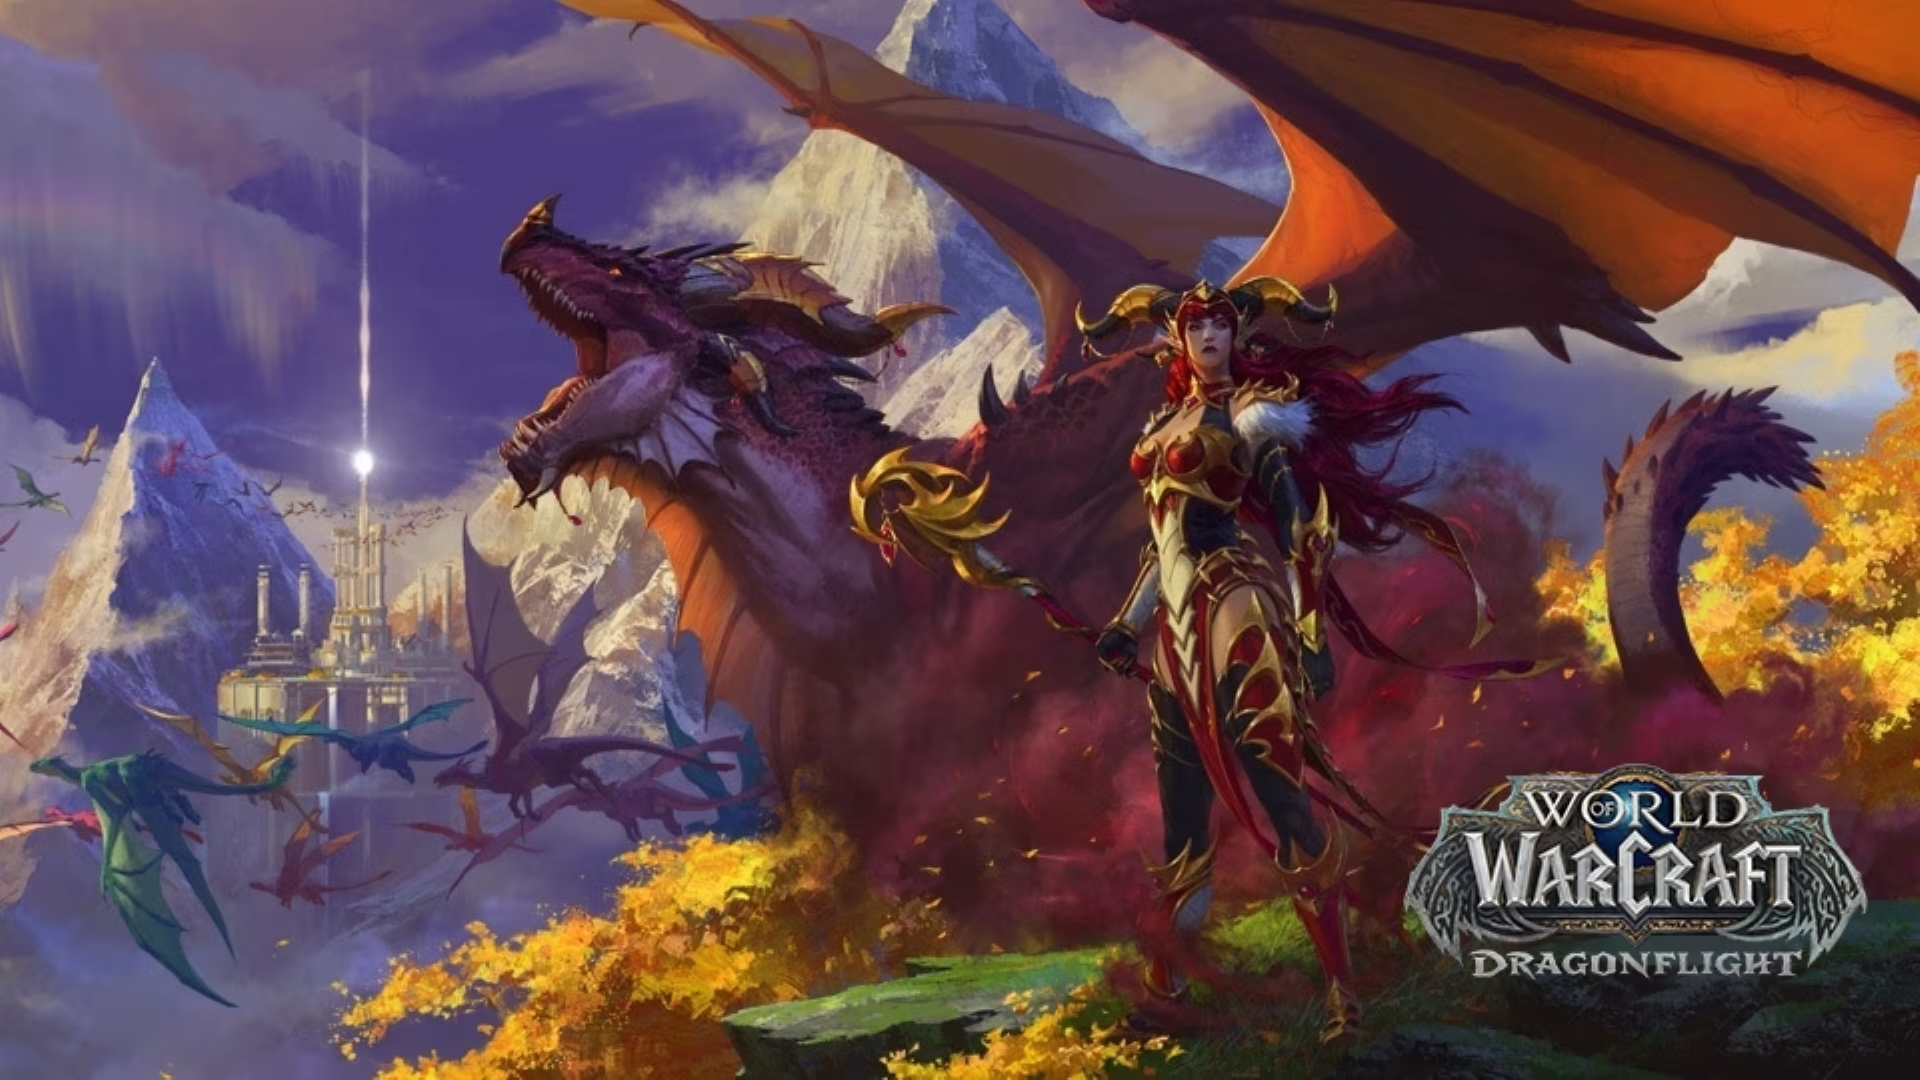 World of Warcraft hiện có 7 triệu người đăng kí chơi